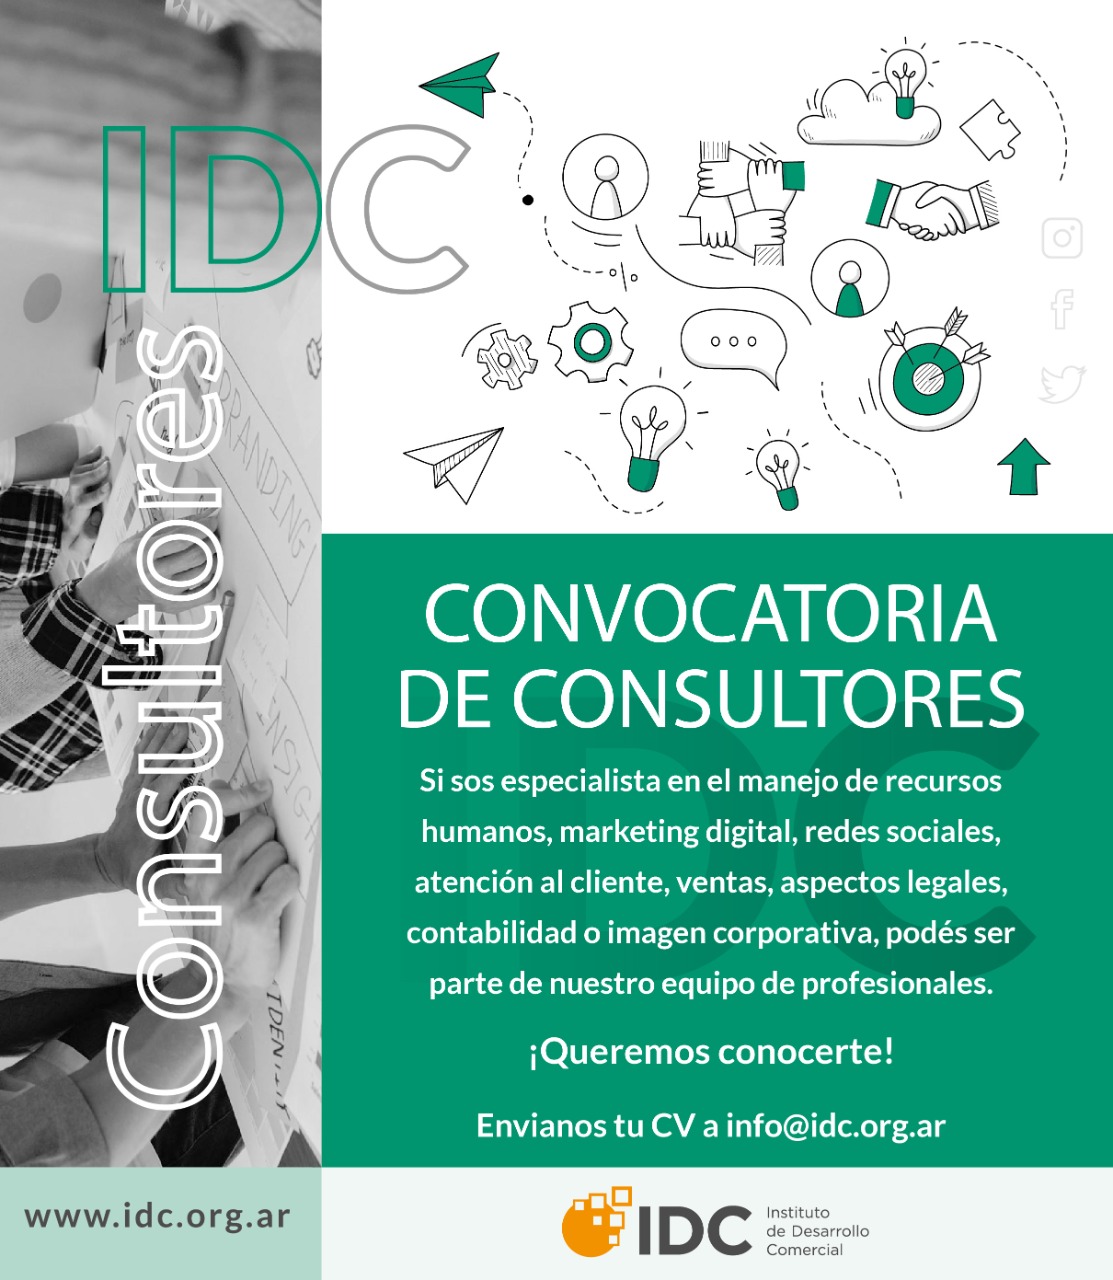 El IDC lanzó una convocatoria abierta destinada a consultores de comercio